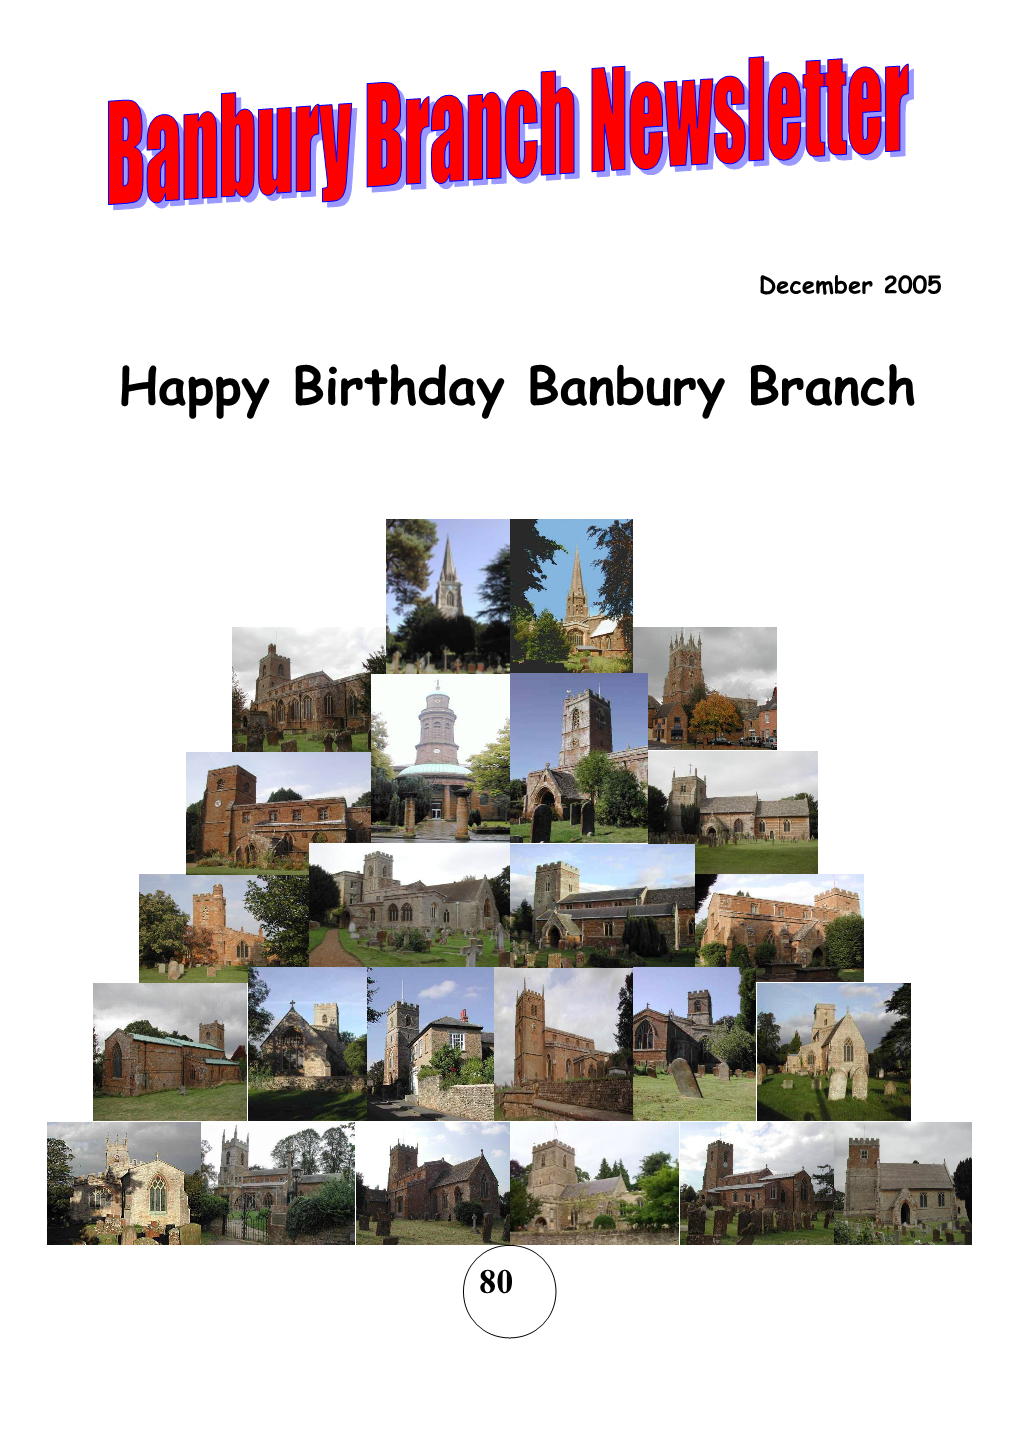 Happy Birthday Banbury Branch